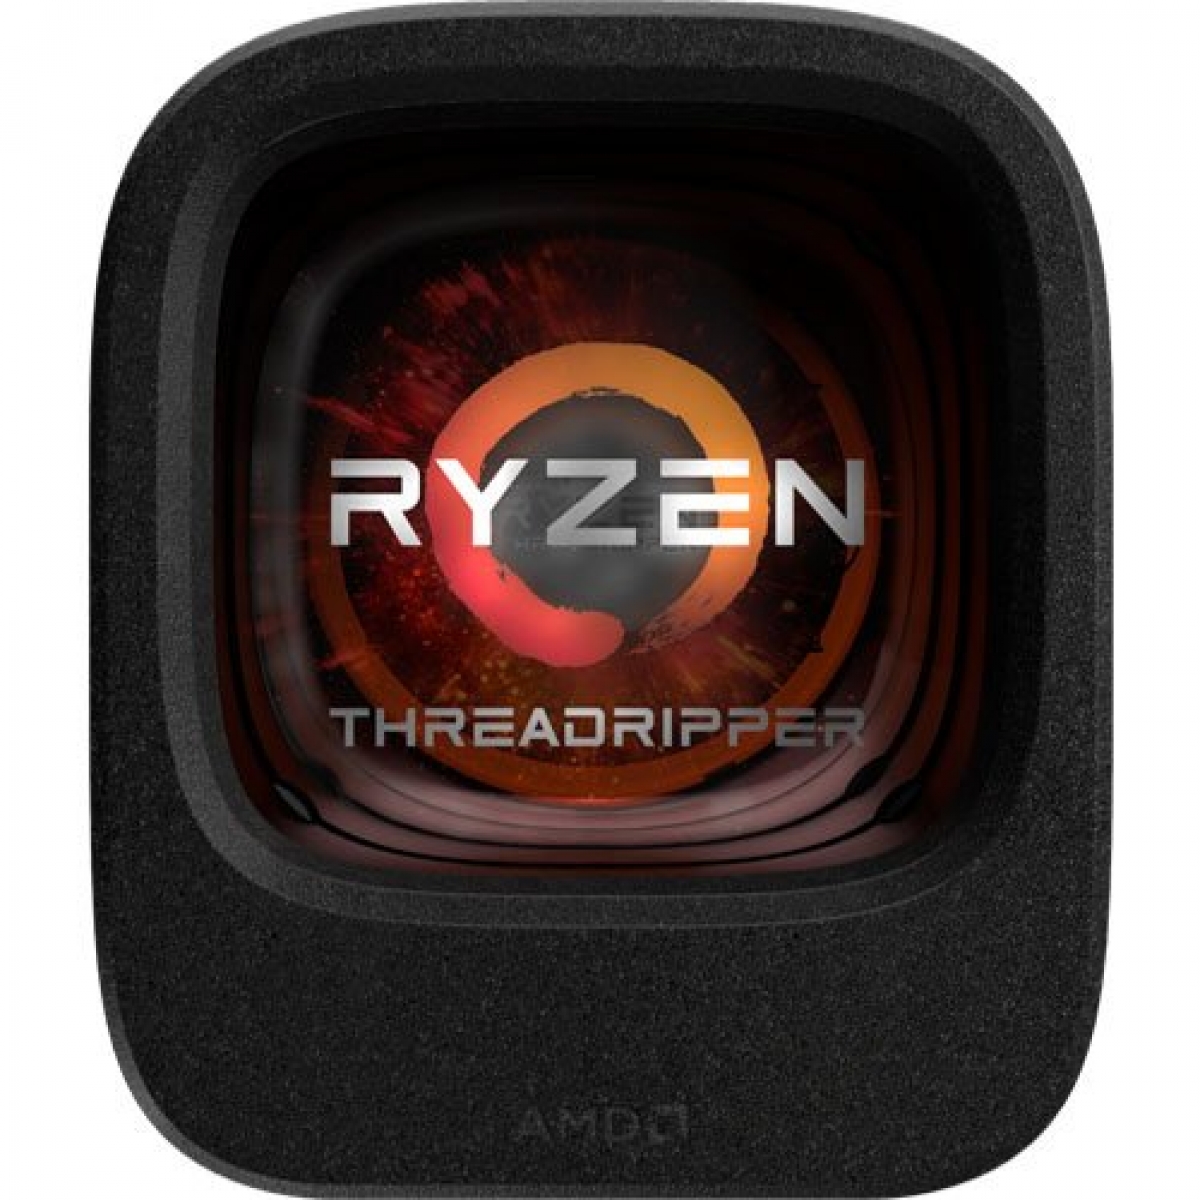 Processador AMD Ryzen Threadripper 1950X, 3.4GHz (4.0GHz Turbo), 16-Core 32-Thread, TR4, YD195XA8AEWOF